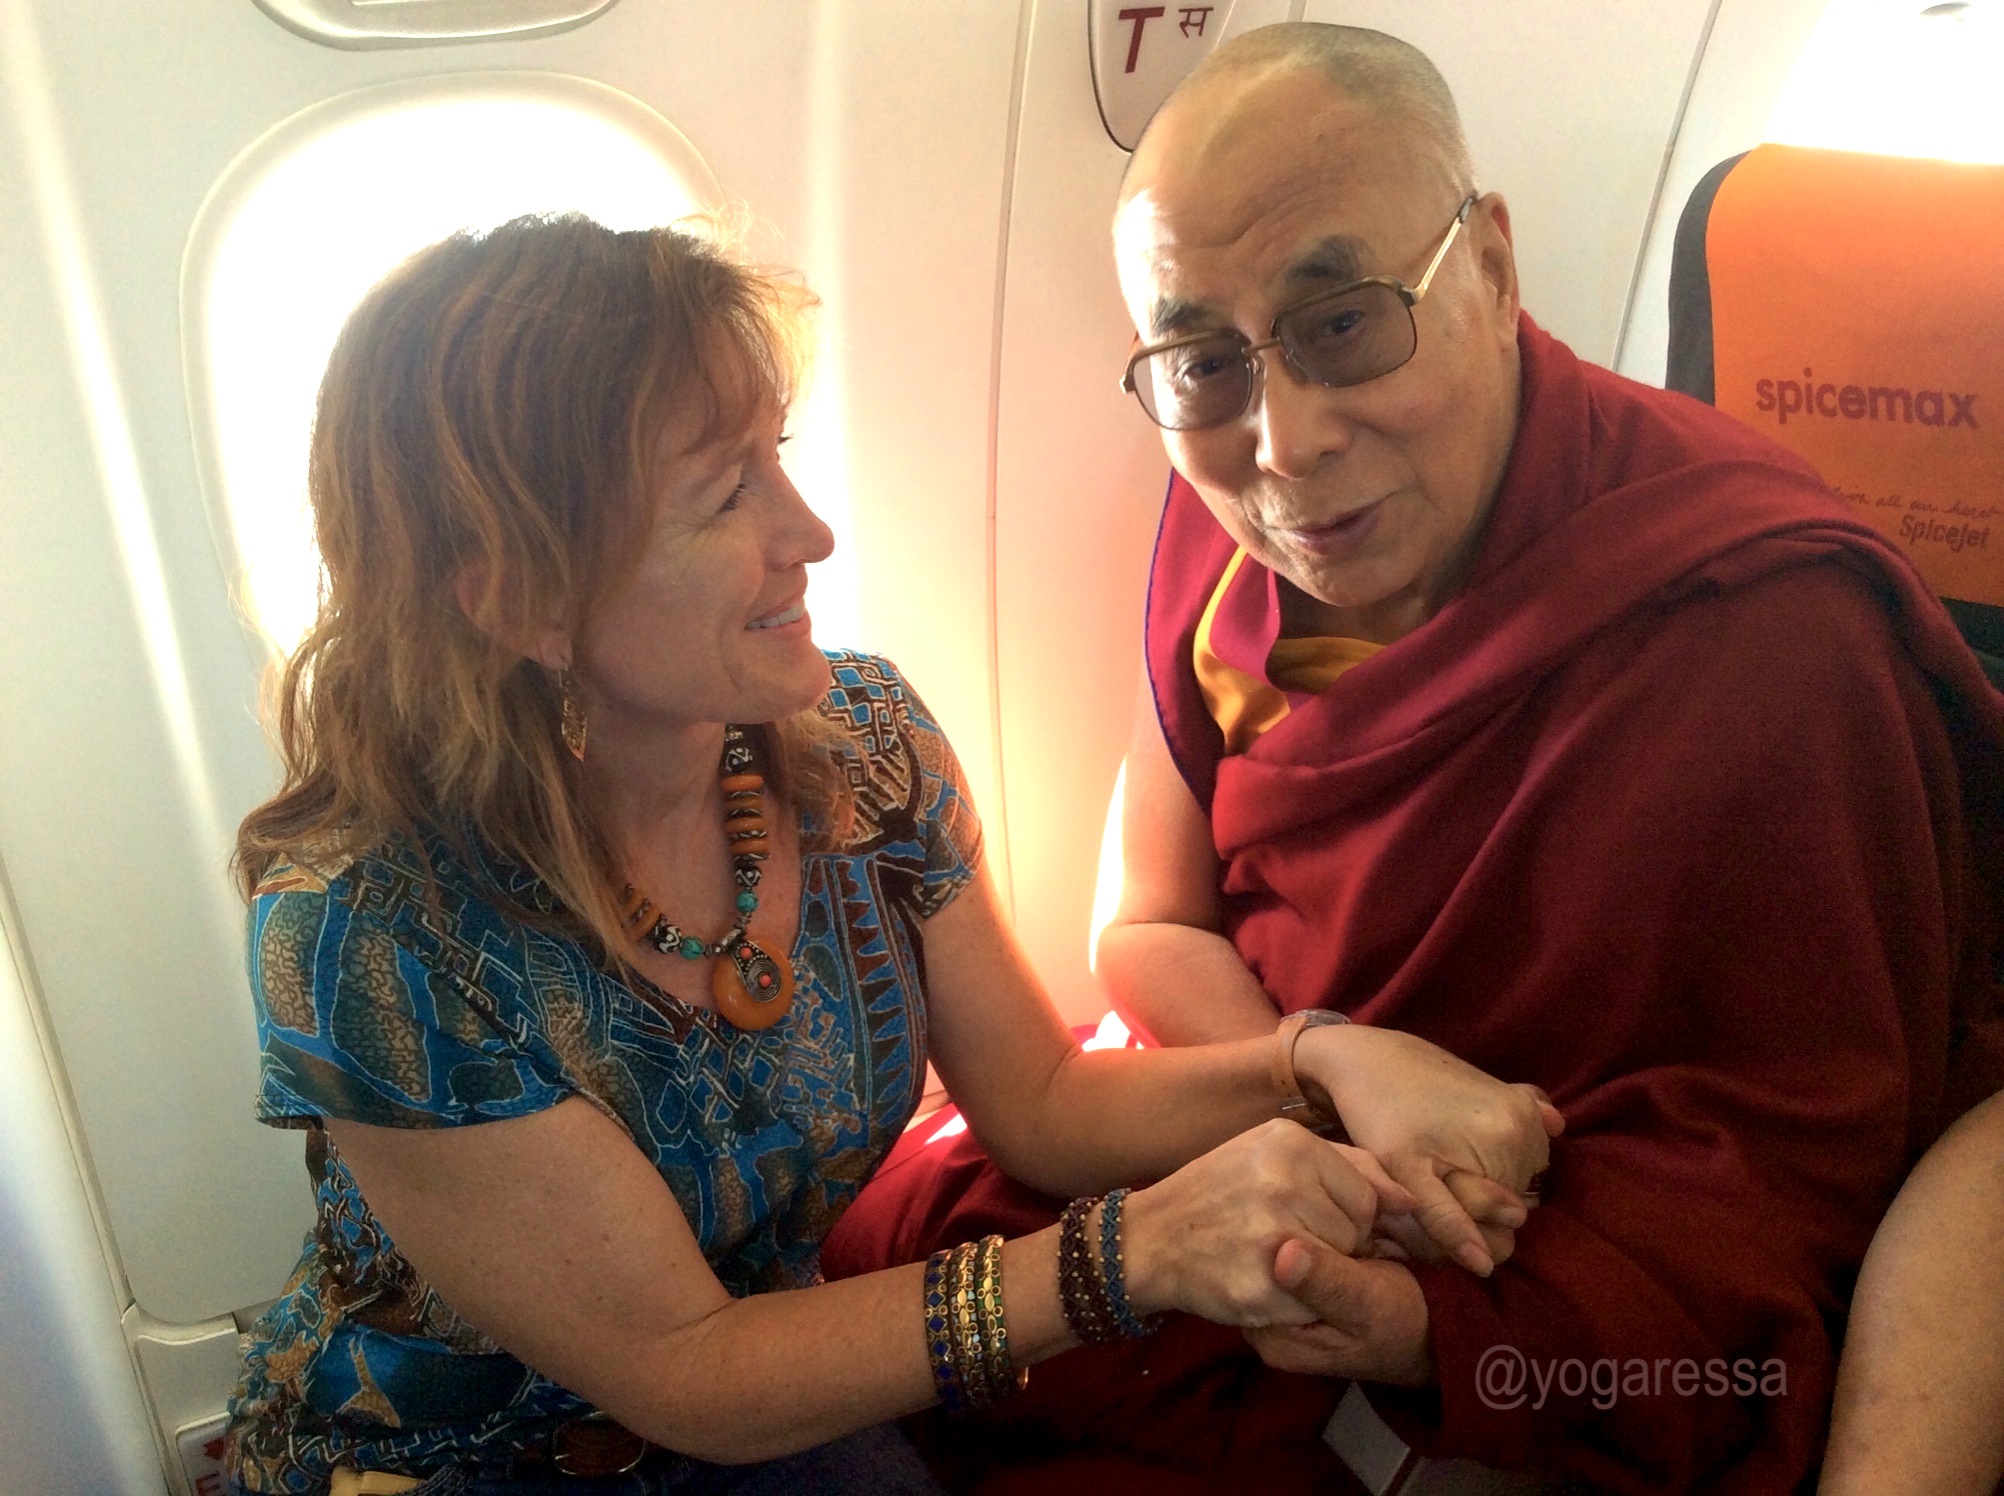 Dalai-Lama-0965-yogaressa-2020